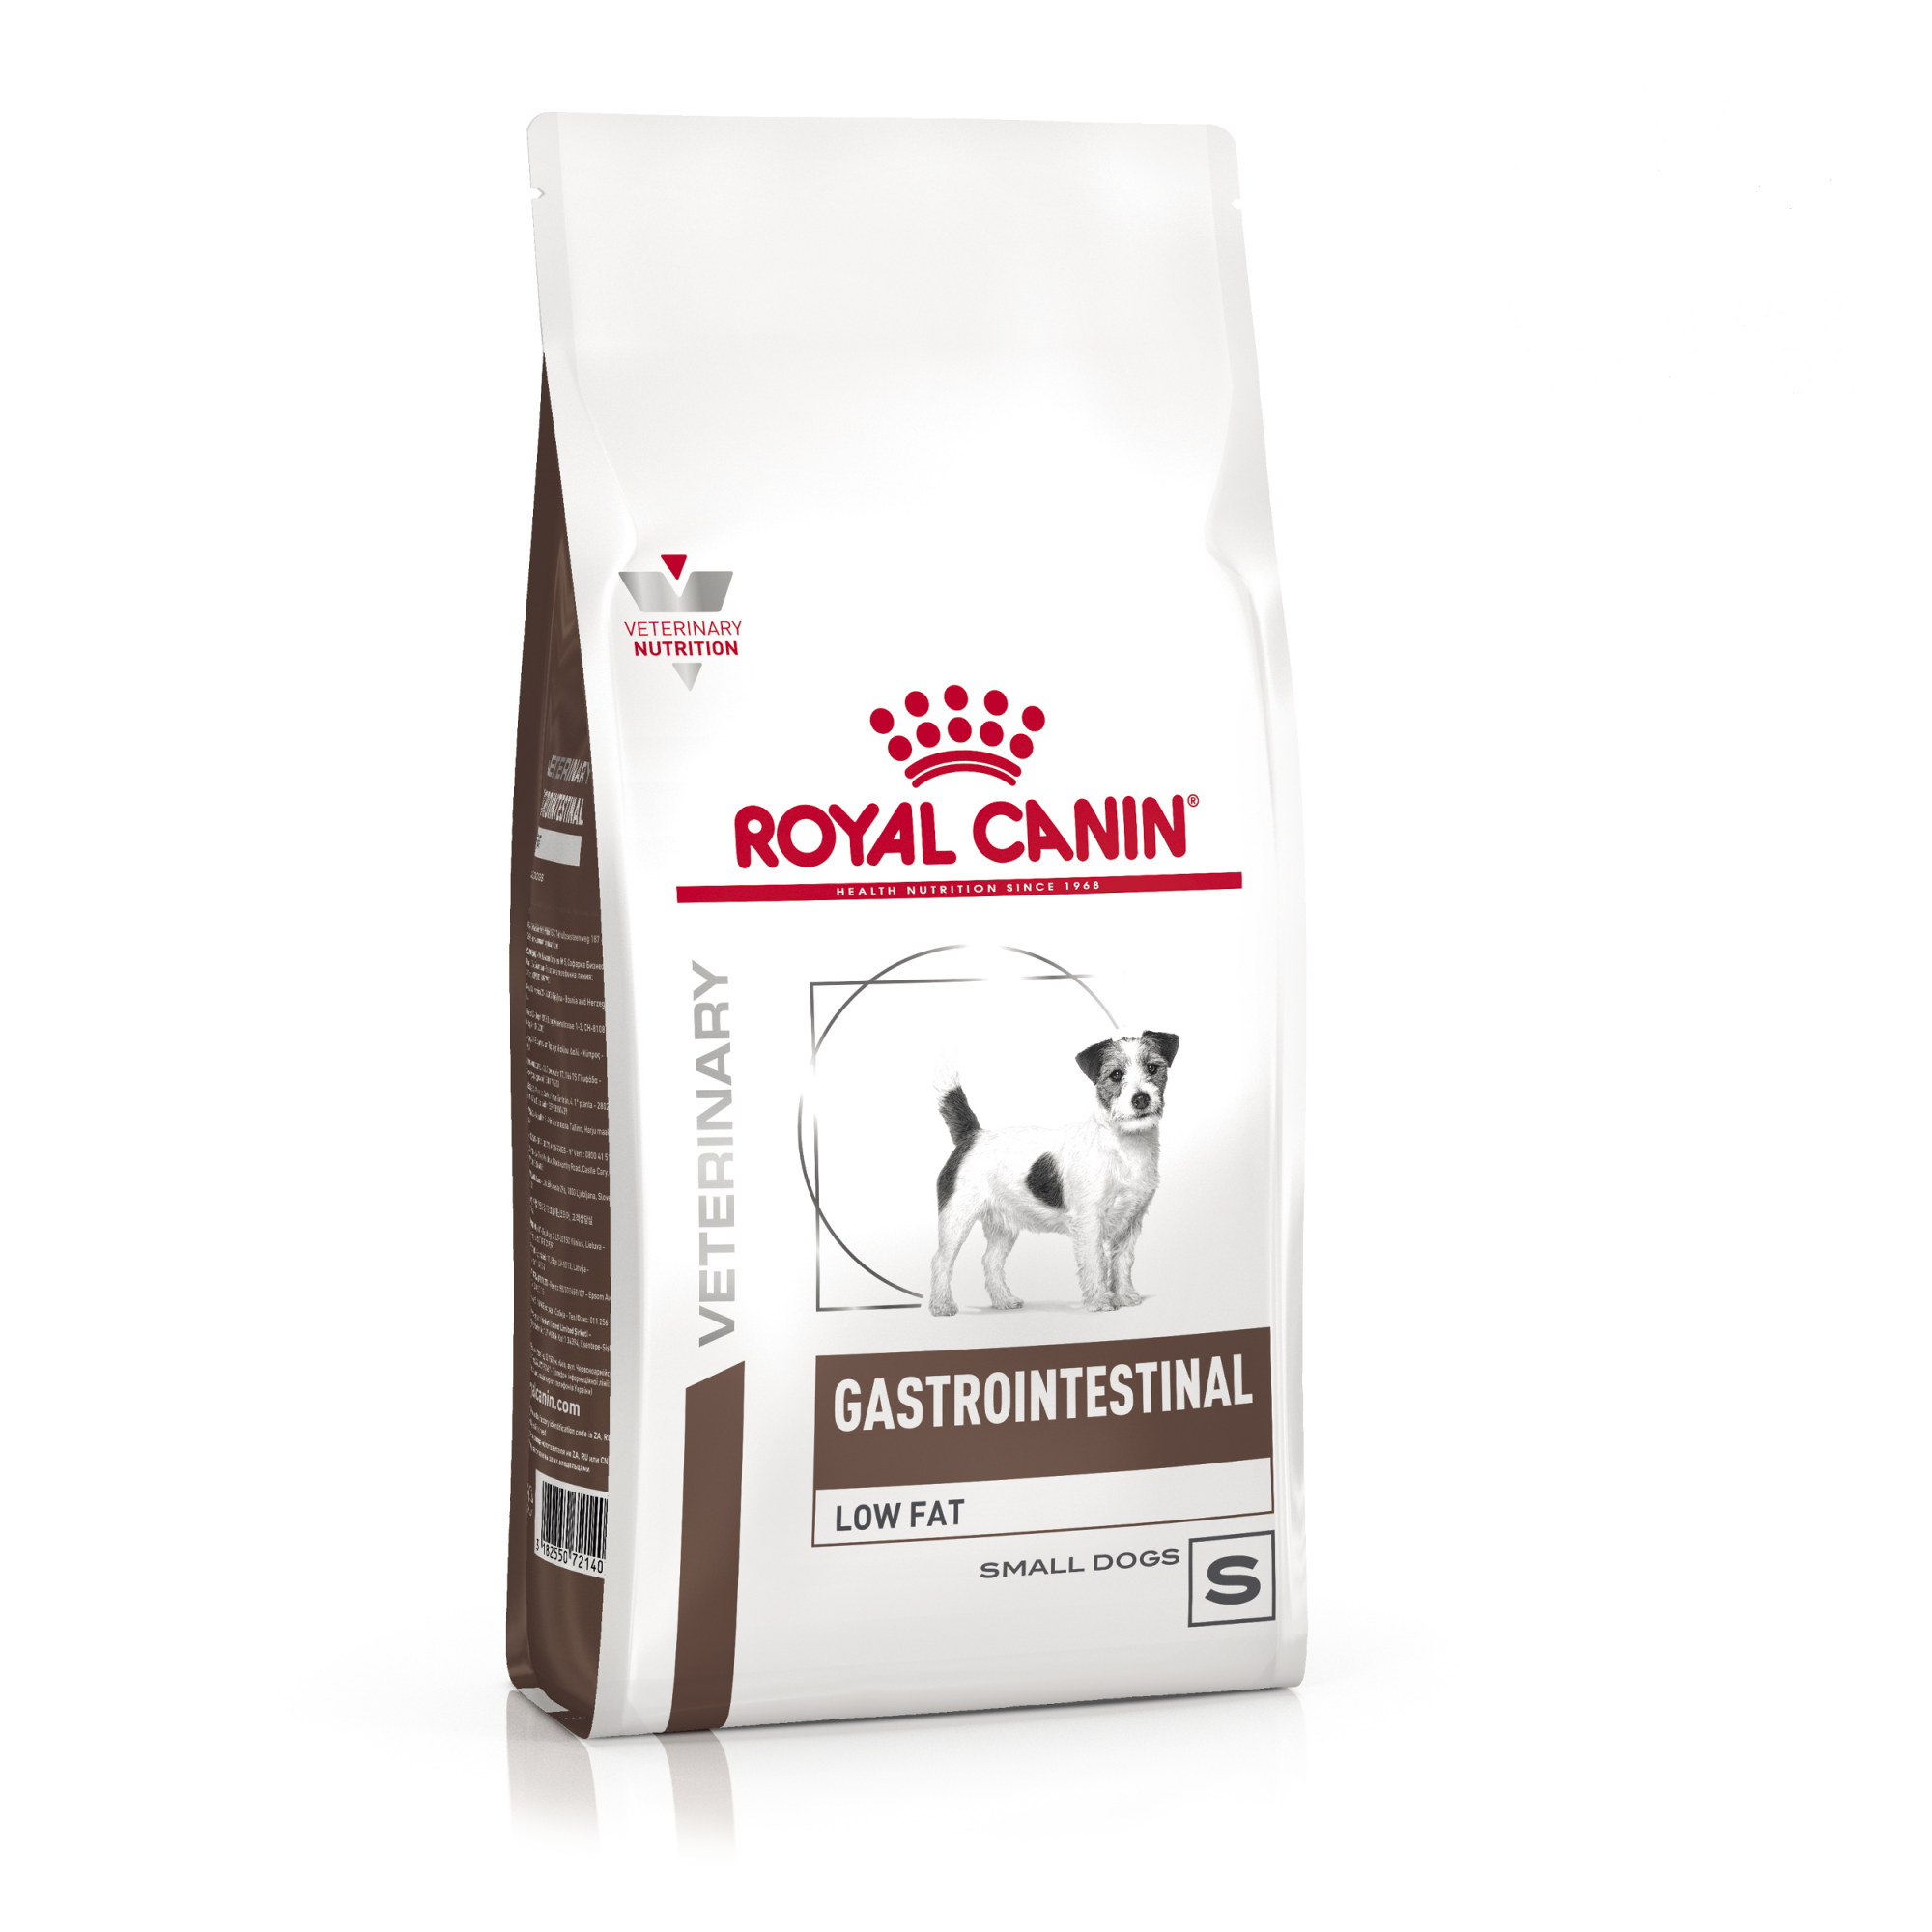 Купить сухой корм для собак Royal Canin Gastro, при нарушениях пищеварения, для малых пород 1 кг, цены на Мегамаркет | Артикул: 100029199476